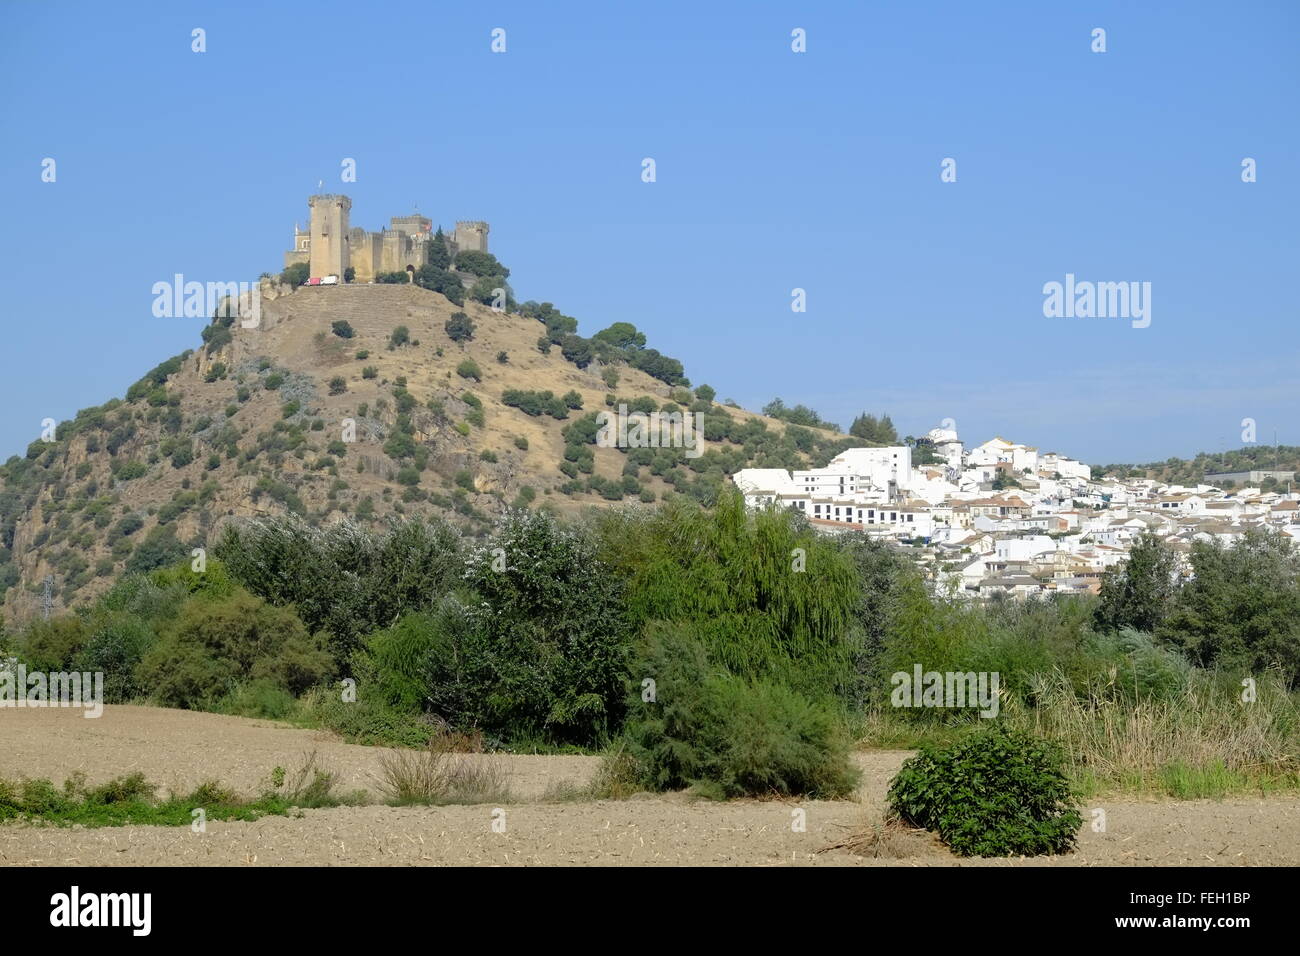 Castillo de Almodóvar, ein Schloss muslimischen Ursprungs über der Stadt Almodóvar del Río, Provinz Córdoba, Andalusien, Spanien Stockfoto